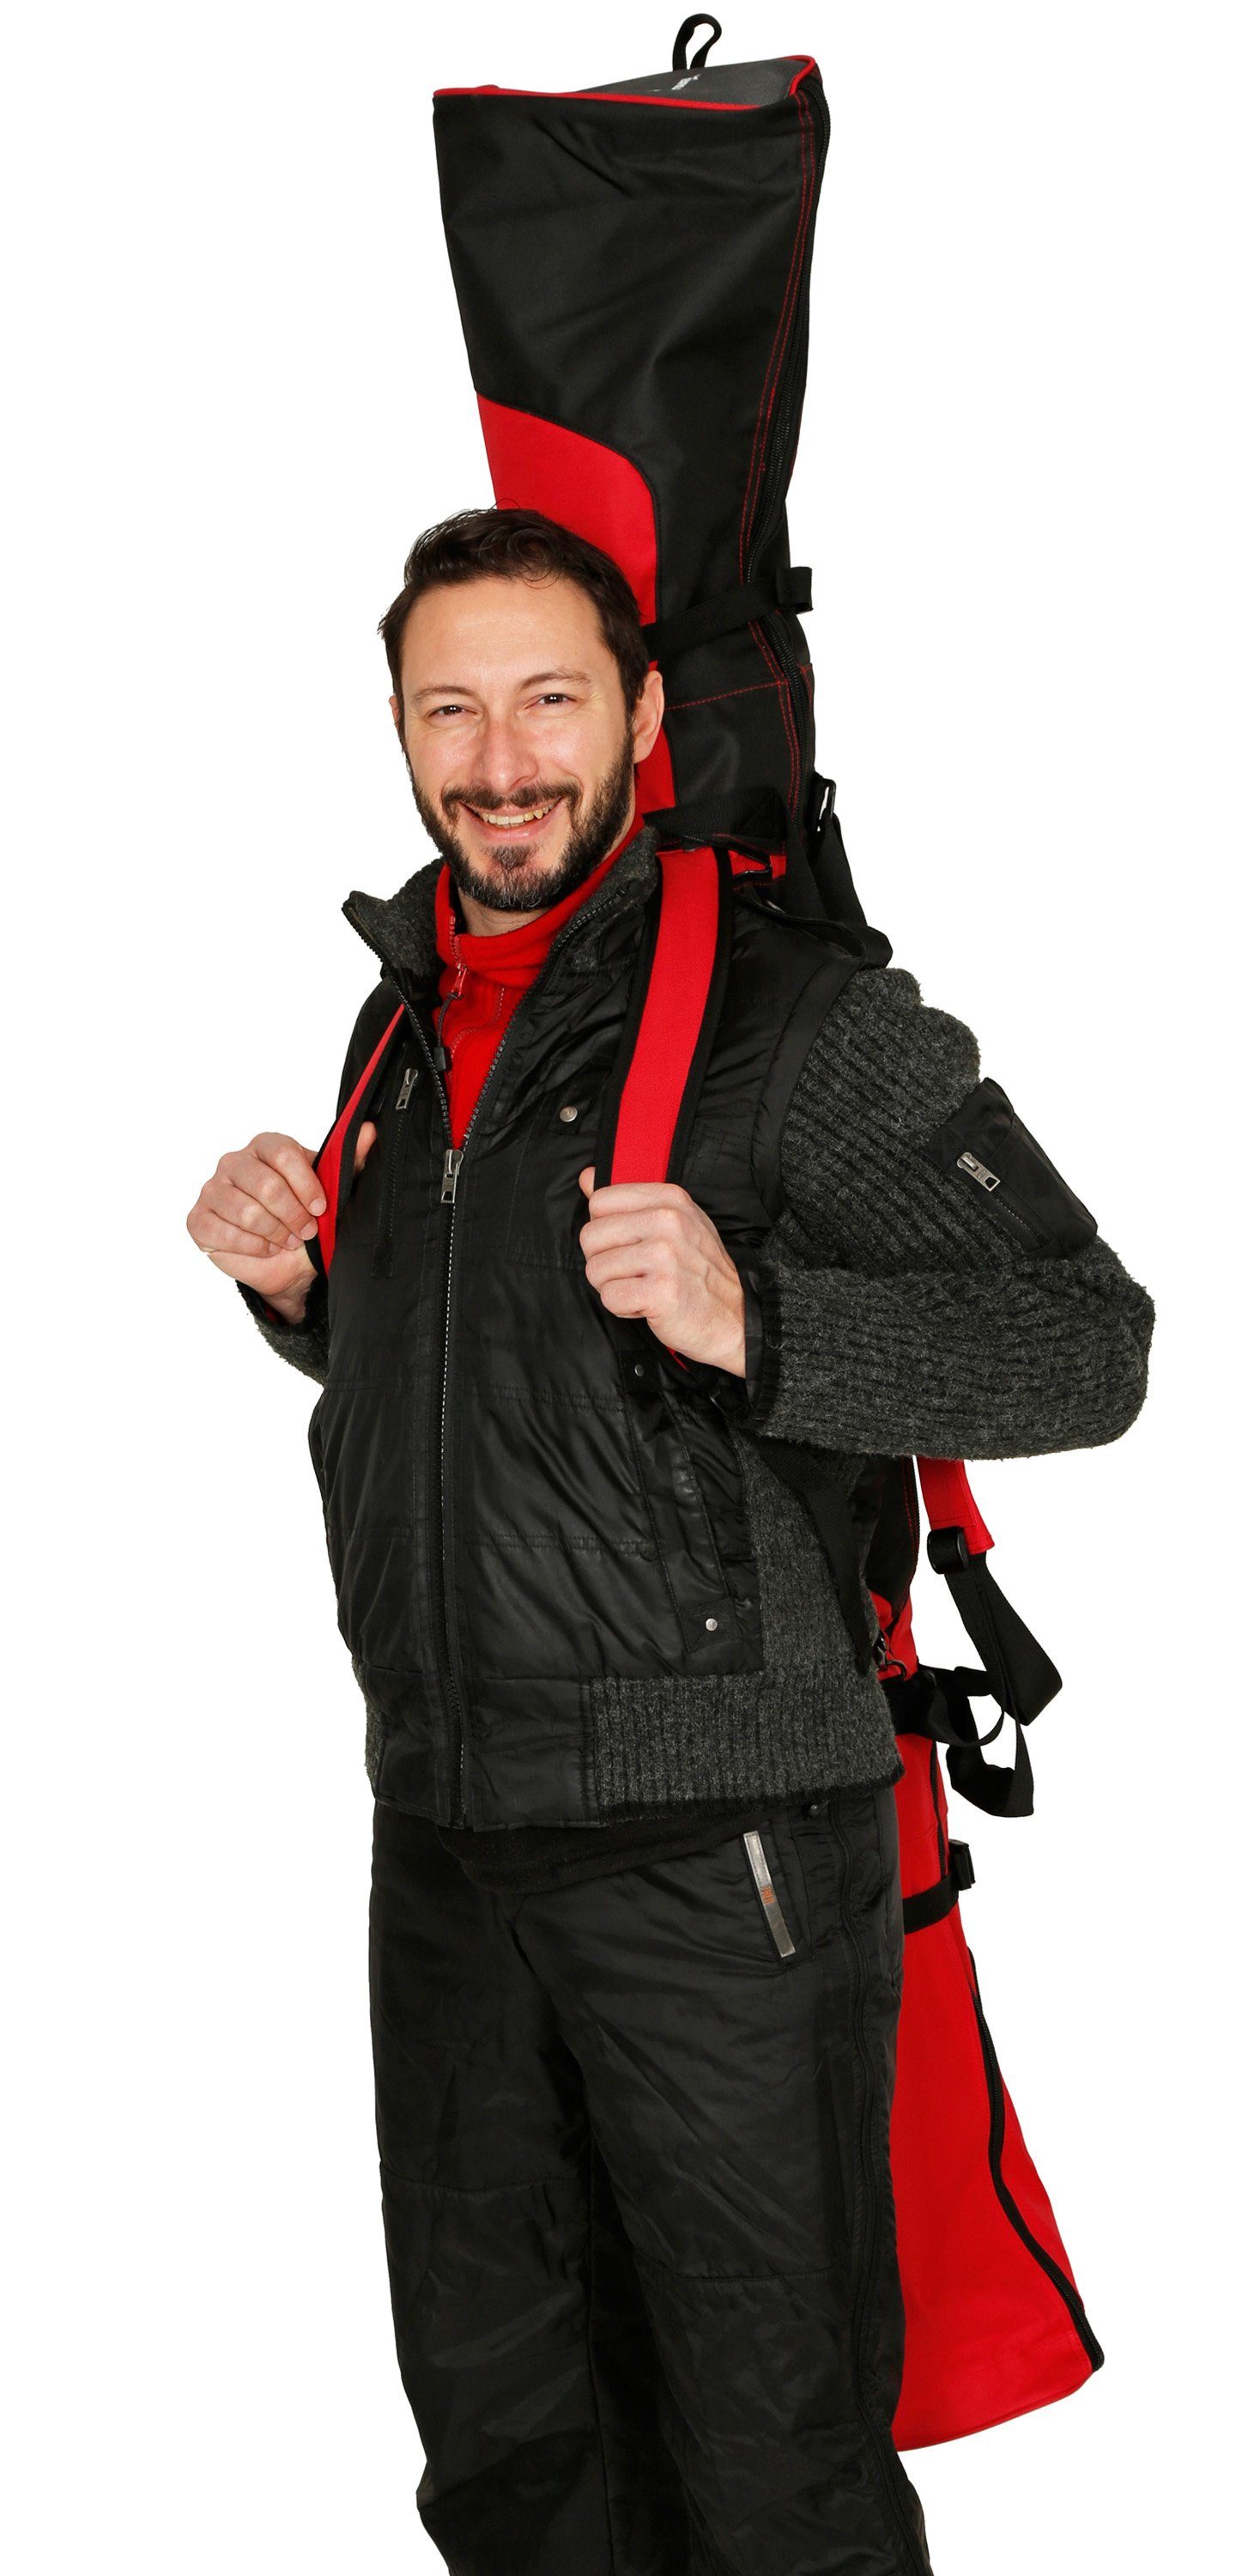 BRUBAKER Sporttasche Carver Skitasche (1-tlg., schnittfest), mit und Rucksacksystem gepolsterter Skisack Pro reißfest XP und Zipperverschluss